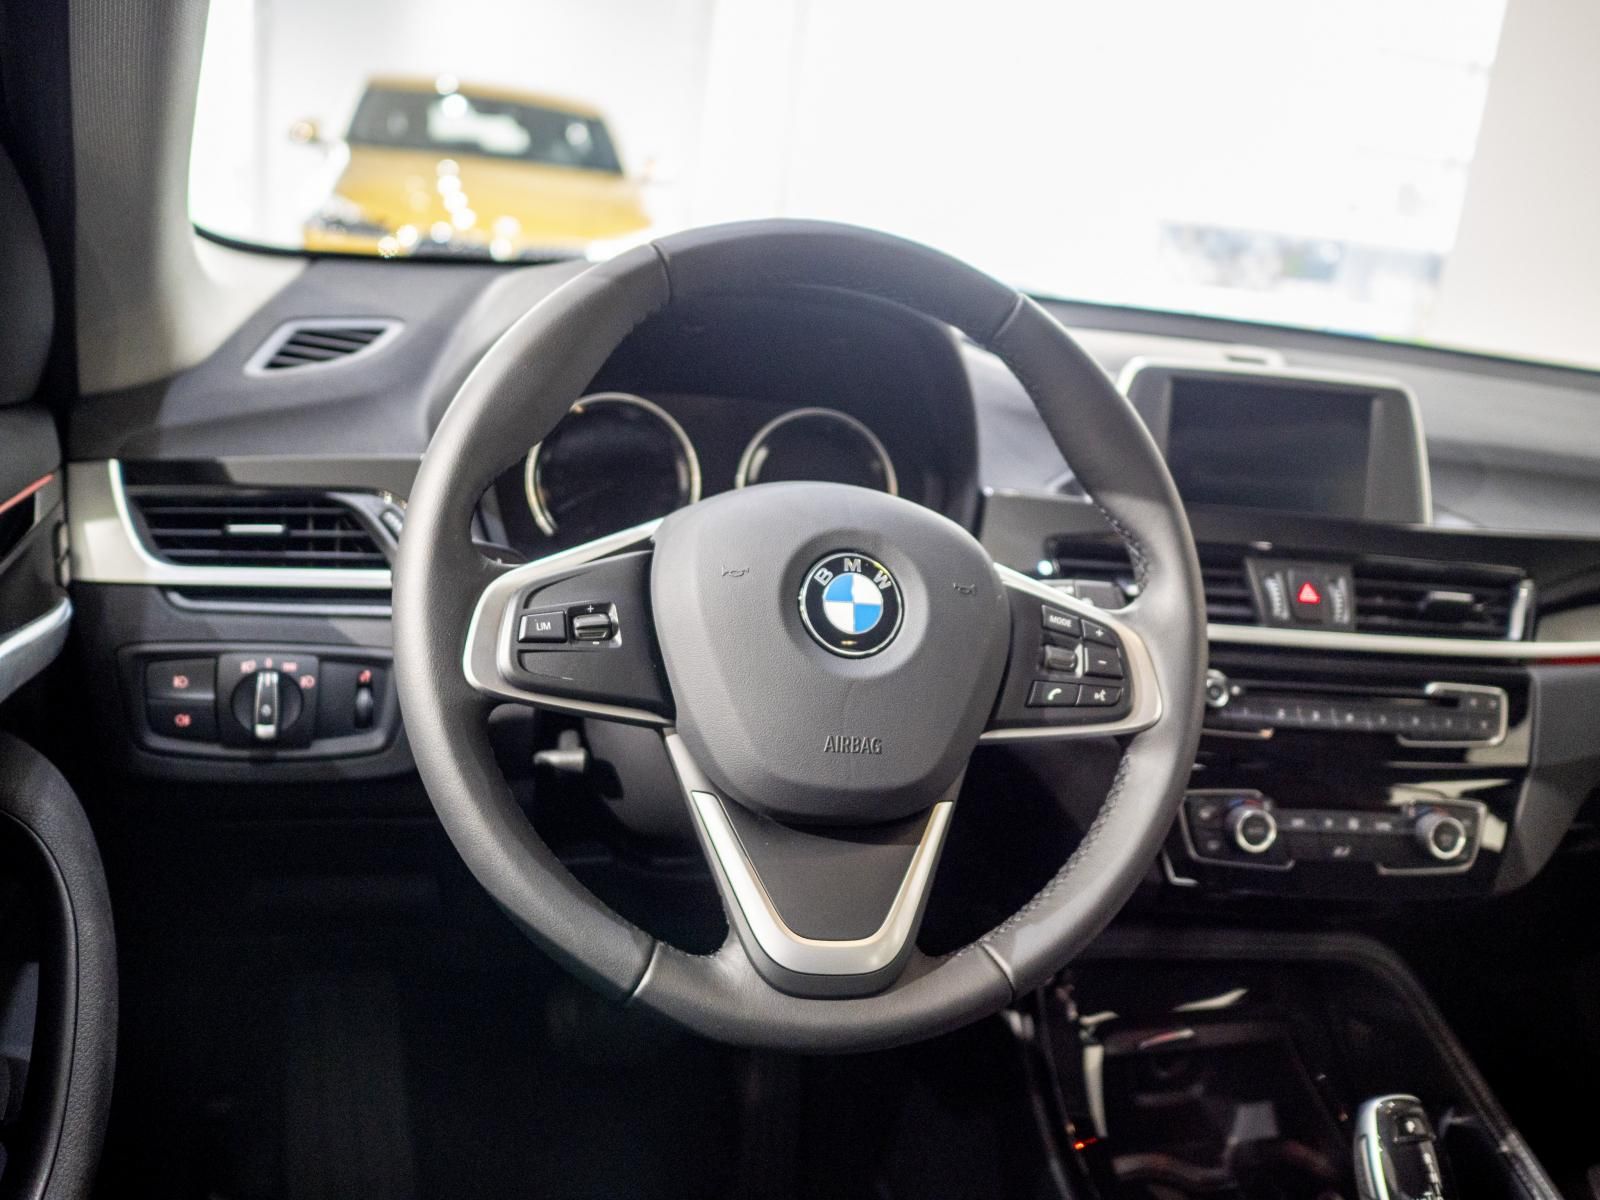 BMW X1 2.0 Turbo 2018 - Ưu đãi giảm tiền mặt lên đến 200 triệu đồng khi mua chiếc xe BMW X1 2.0 Turbo, sản xuất 2019, màu trắng, nhập khẩu nguyên chiếc